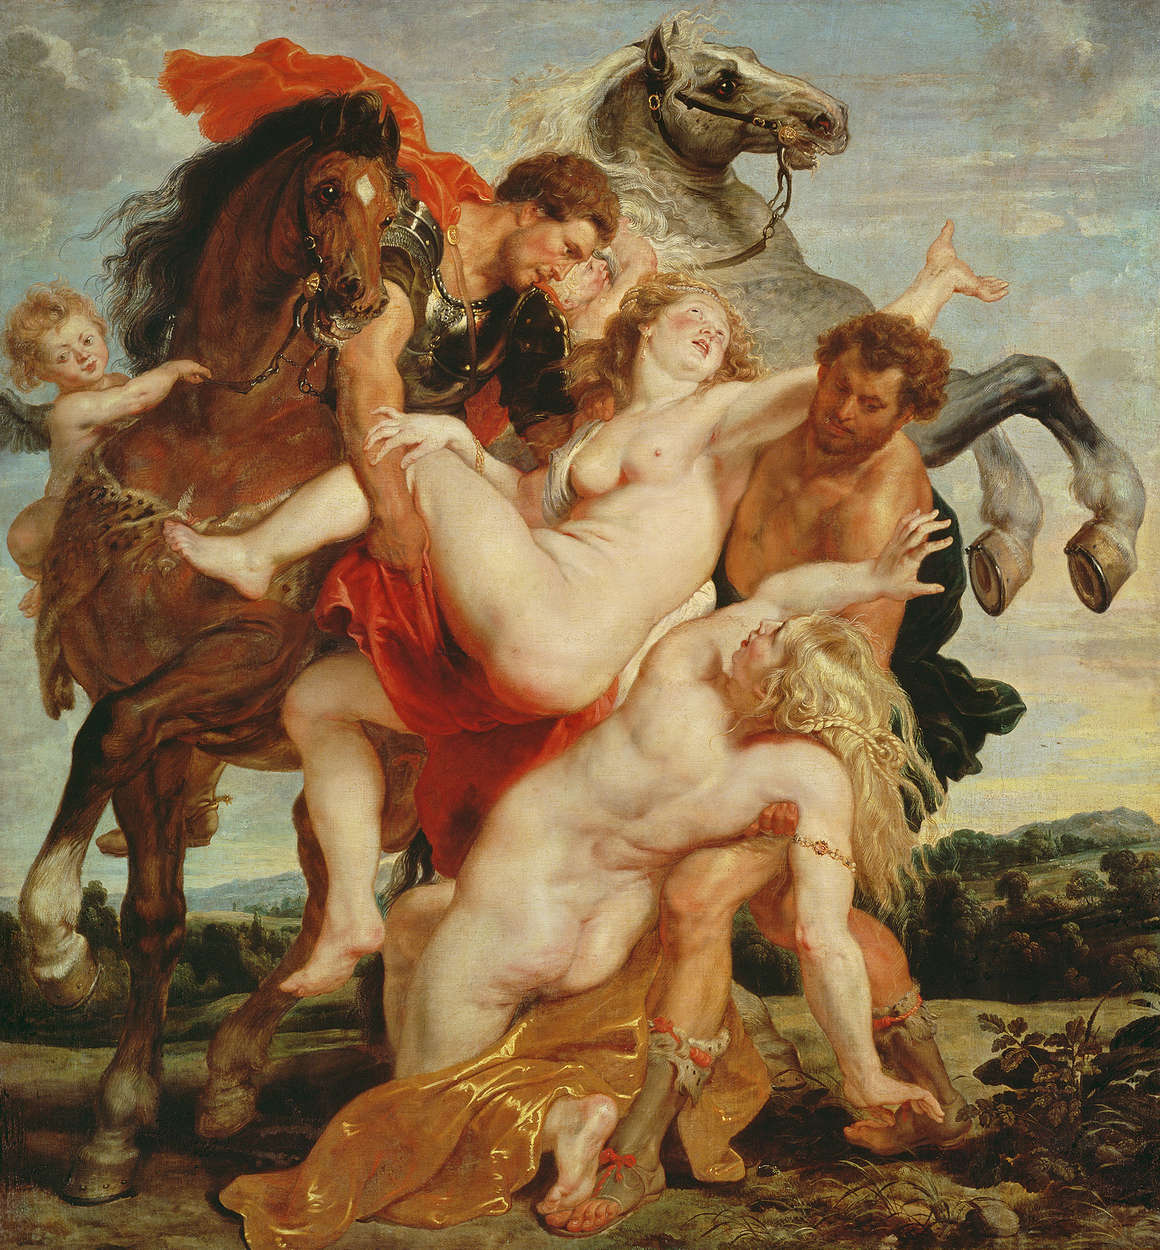             Mural "La violación de las hijas de Leucipo" de Peter Paul Rubens
        